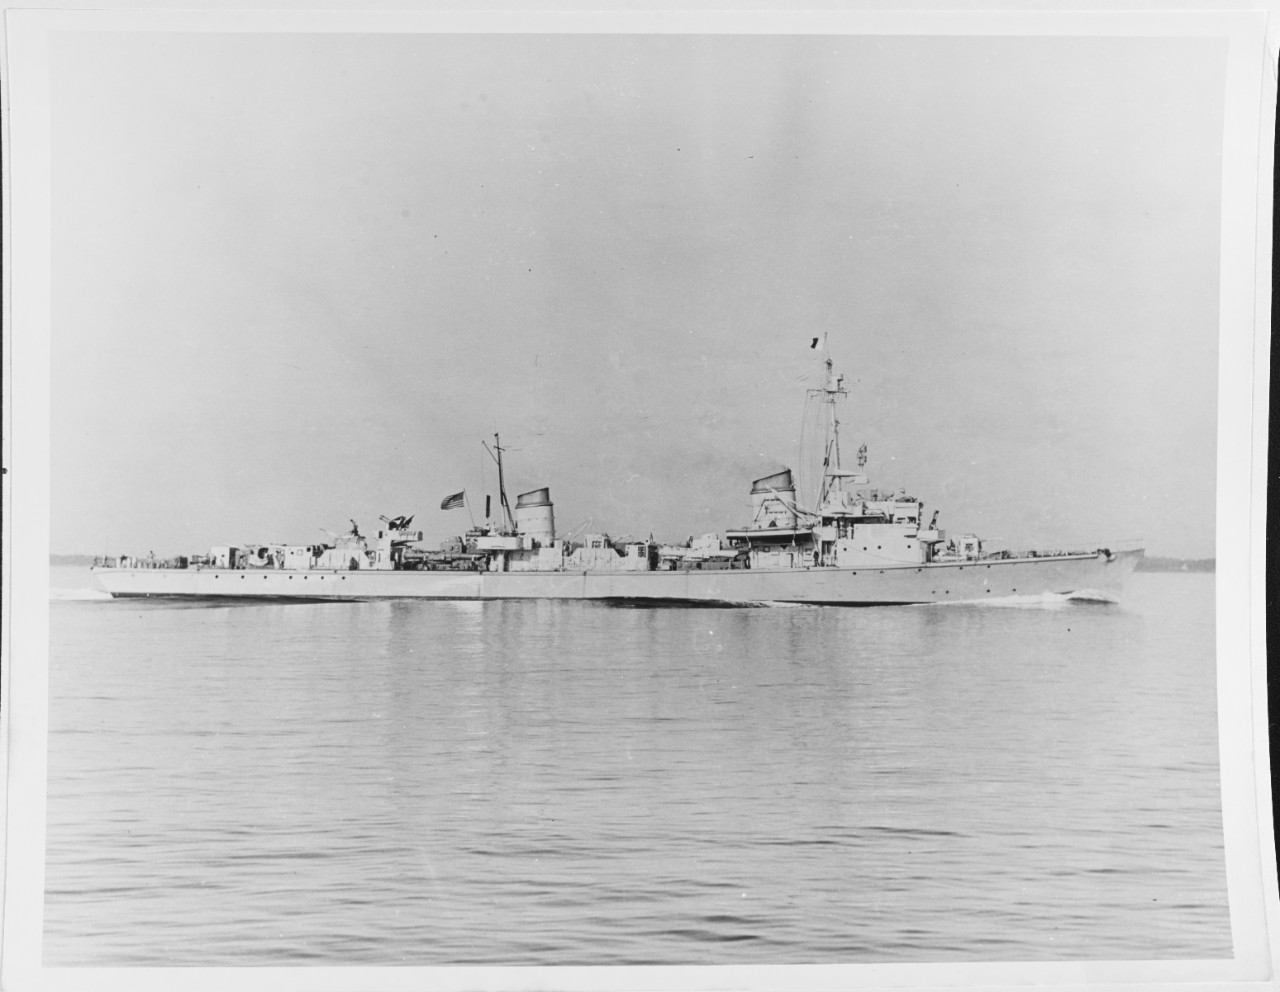 USS T-35 (DD-935, ex-German torpedo boat T-35)